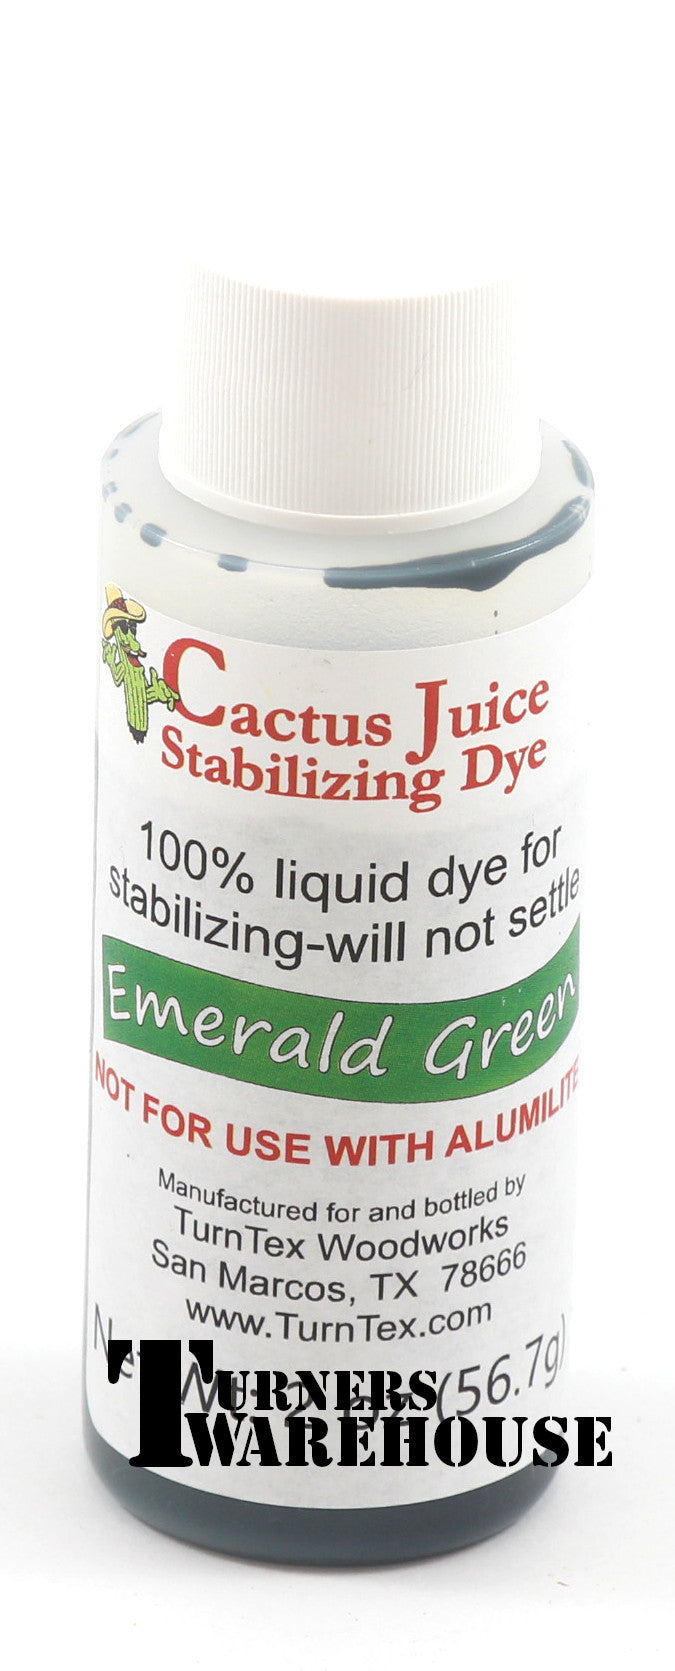 Cactus Juice Stabilizing Dye – Turners Warehouse